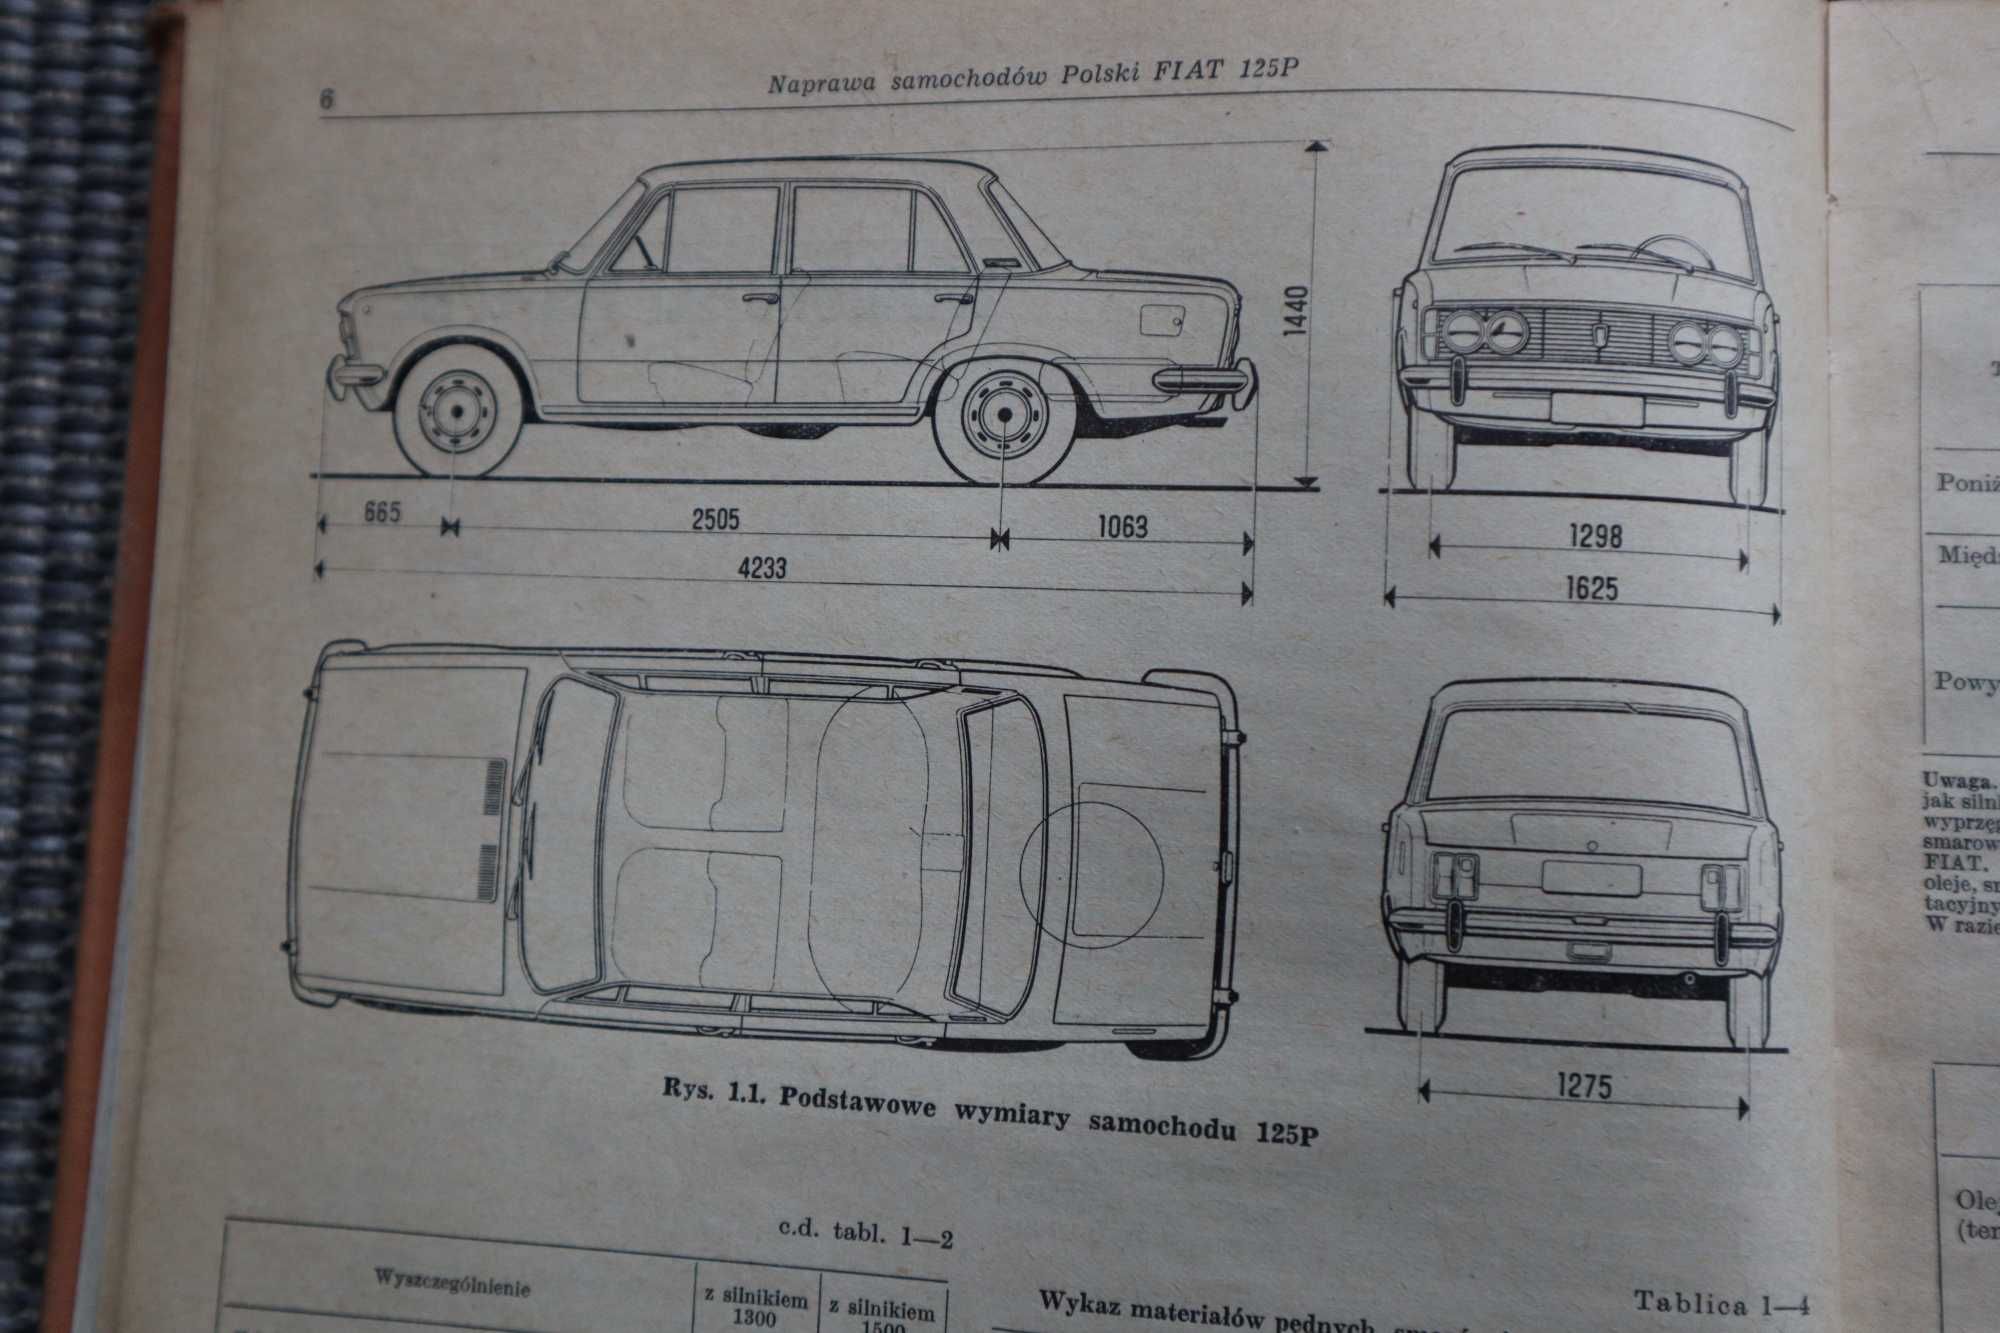 Naprawa samochodu POLSKI FAIT 125P WKŁ 1970 R wydanie 1 KB061811